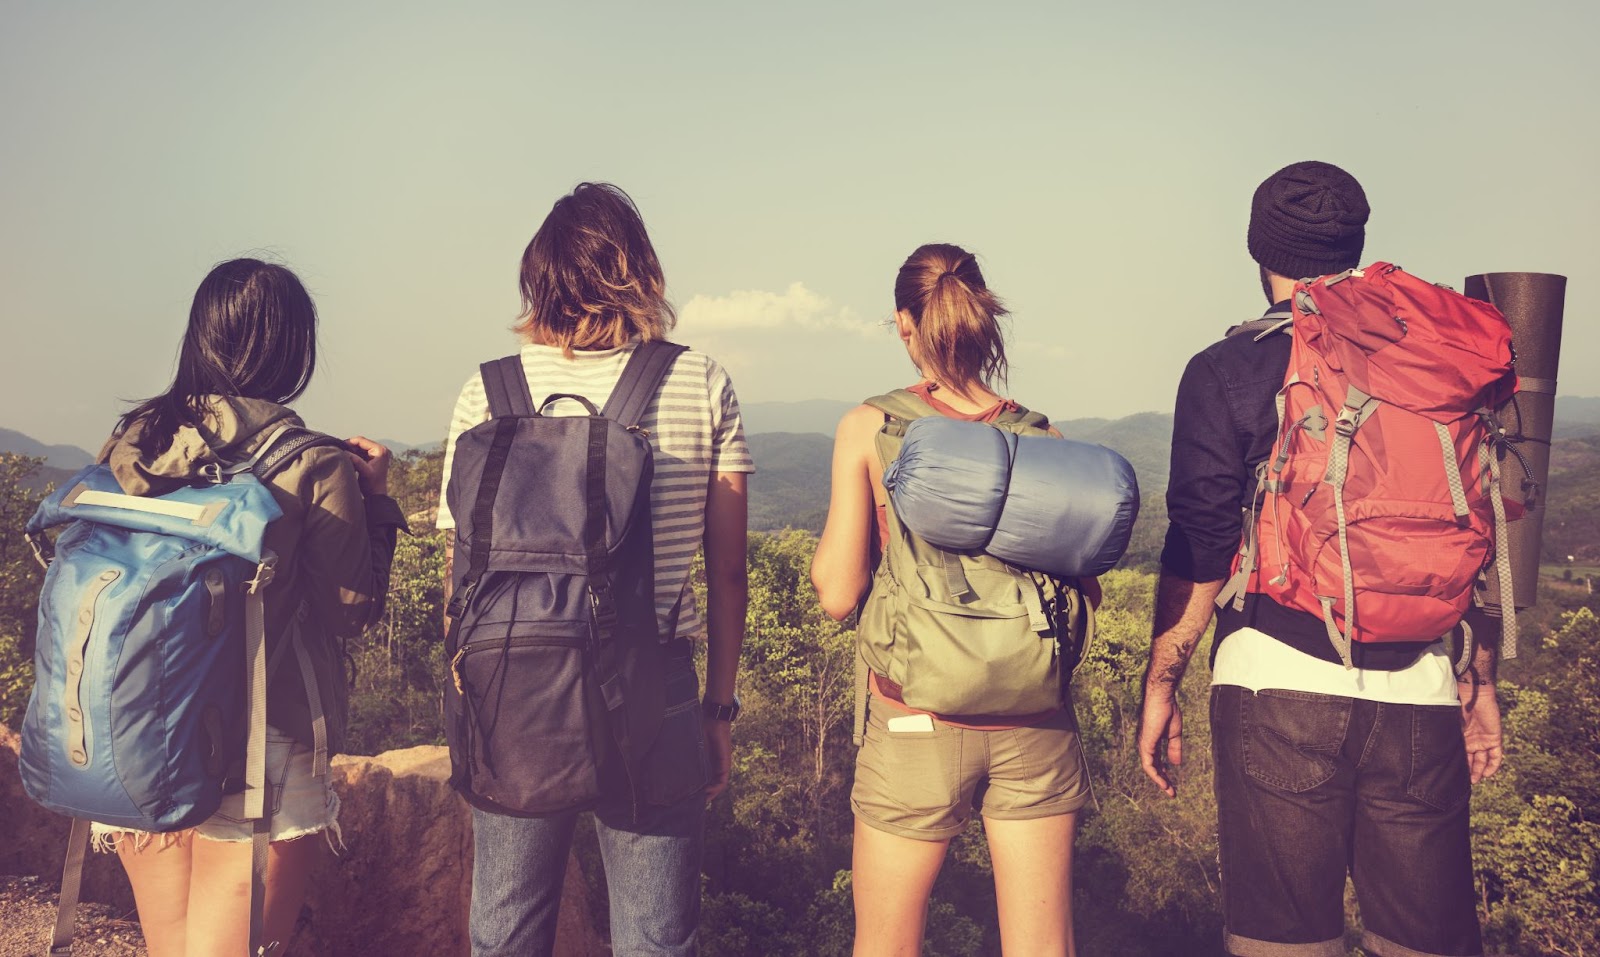 Grupo de viajantes observando uma paisagem serrana, composta por uma floresta verde e montanhas. As quatro pessoas estão de costas para a câmera e carregam mochilas de trilha.
